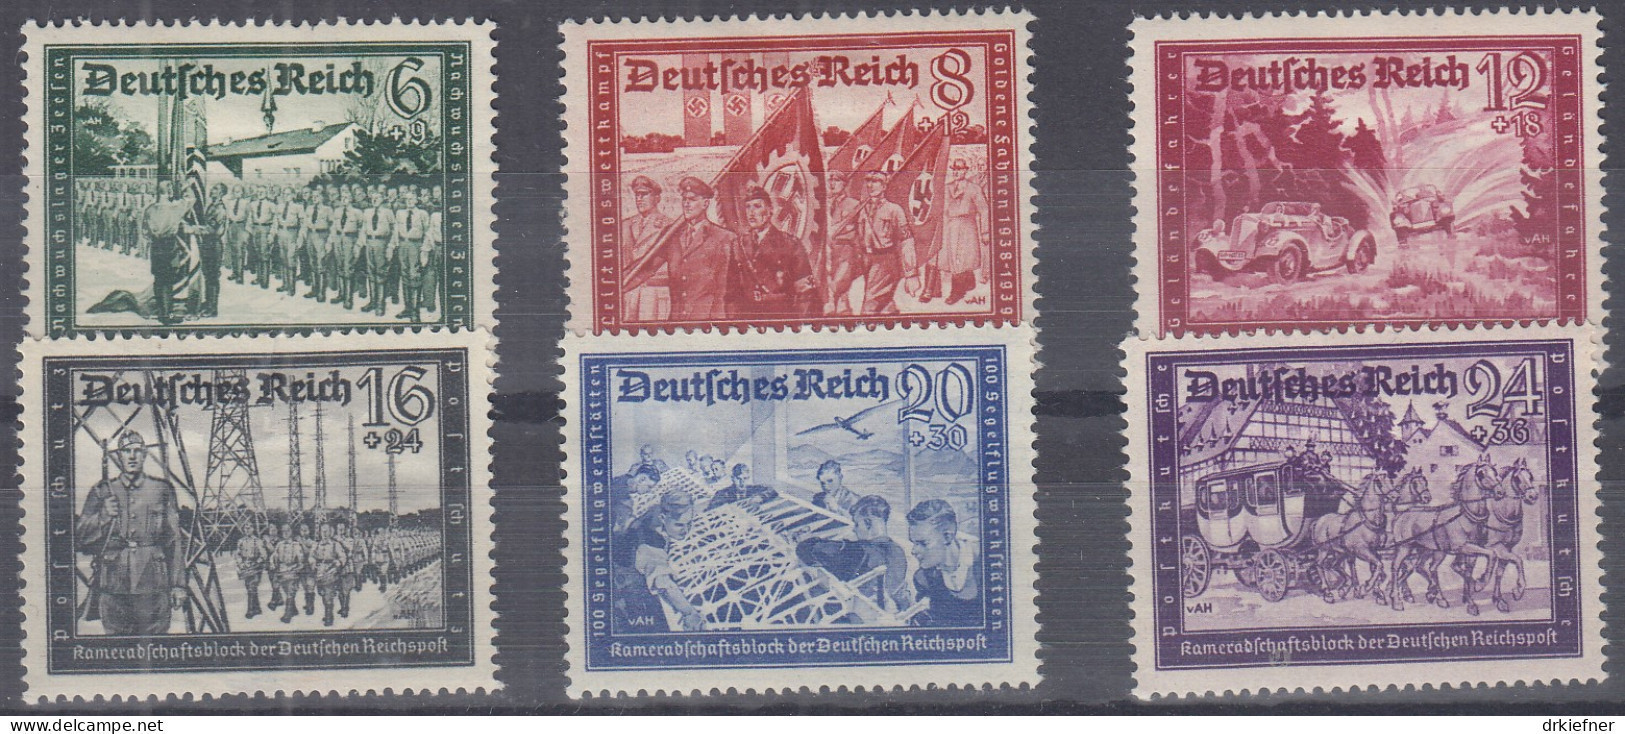 DR 773-778, Ungebraucht *, Kameradschaftsblock Der Deutschen Reichspost, 1941 - Nuovi